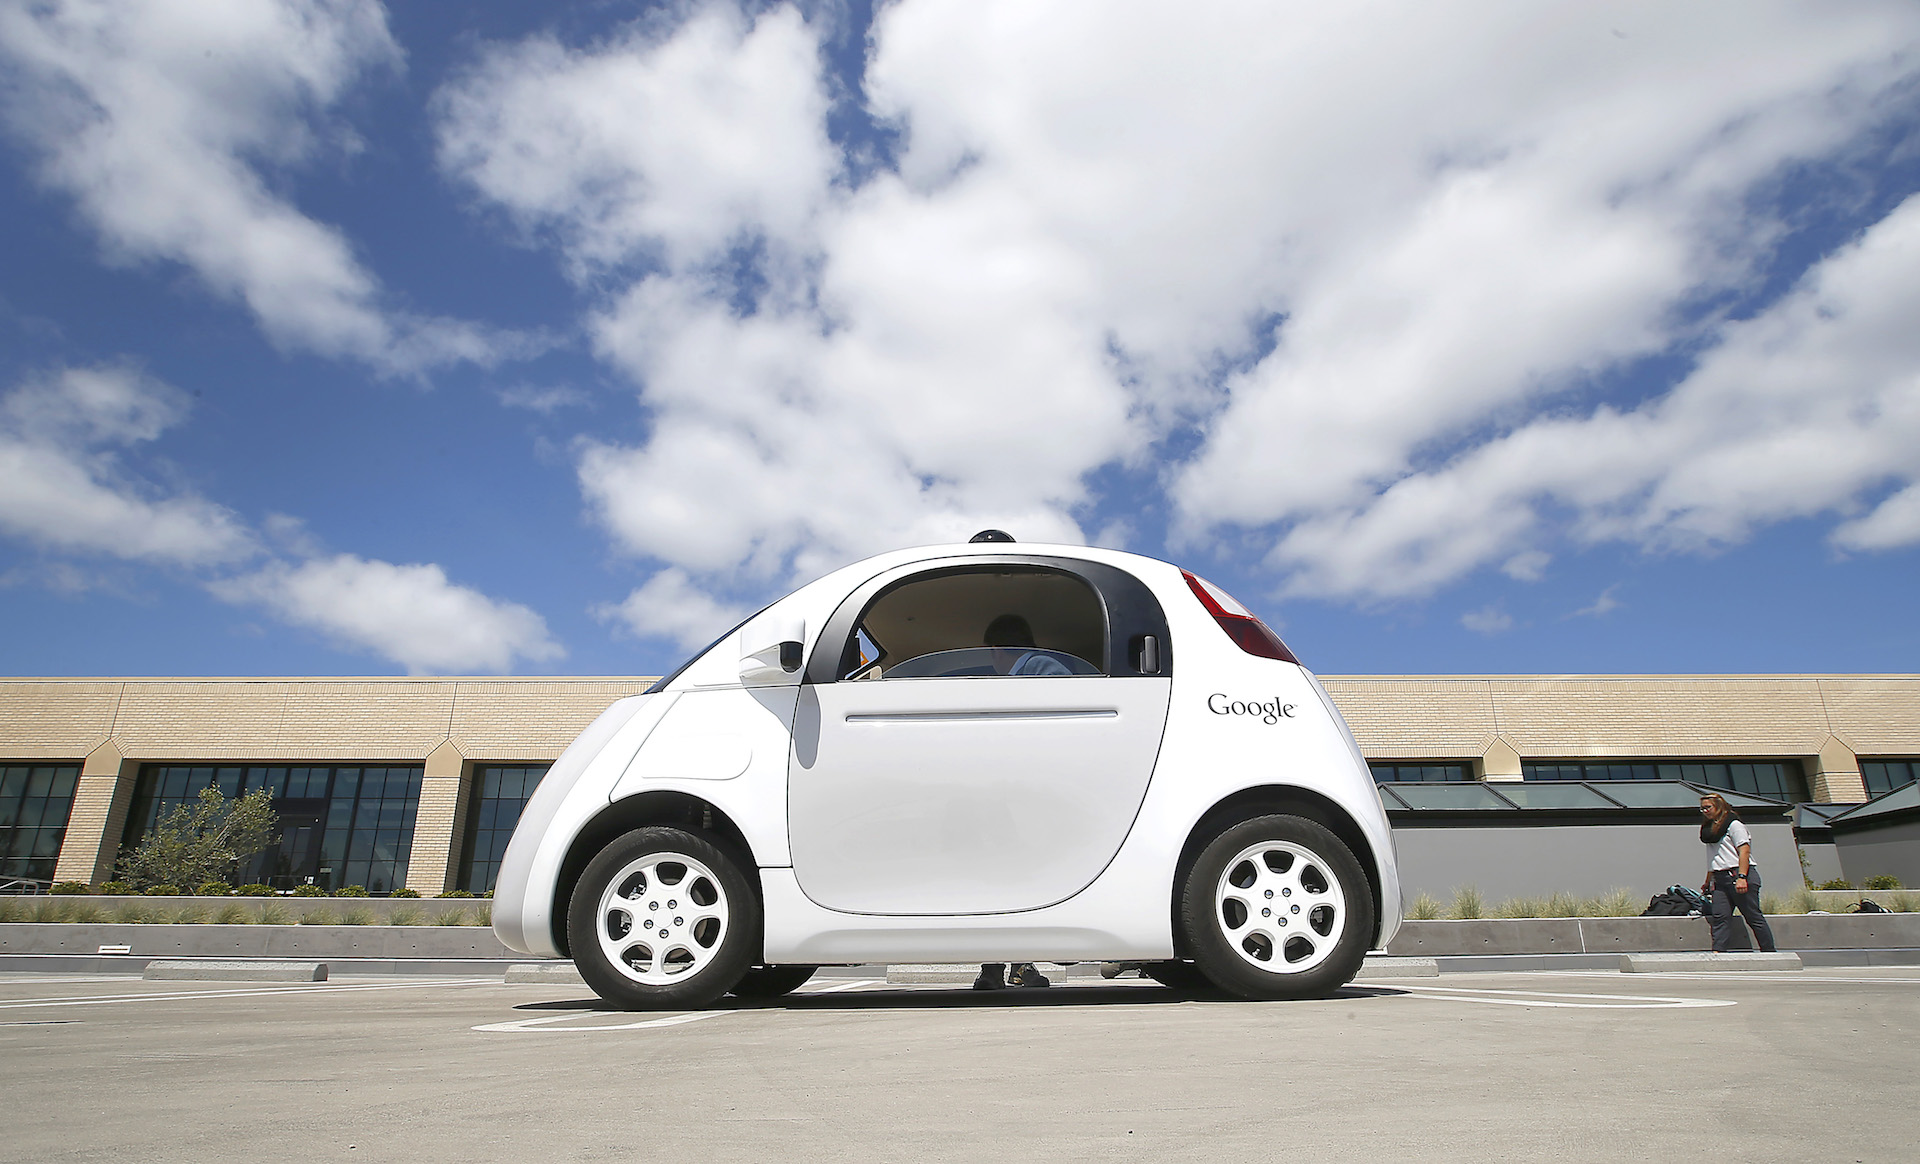 Voiture autonome : Où en sont les constructeurs ? (Google, Tesla, Volvo, Renault&#8230;)